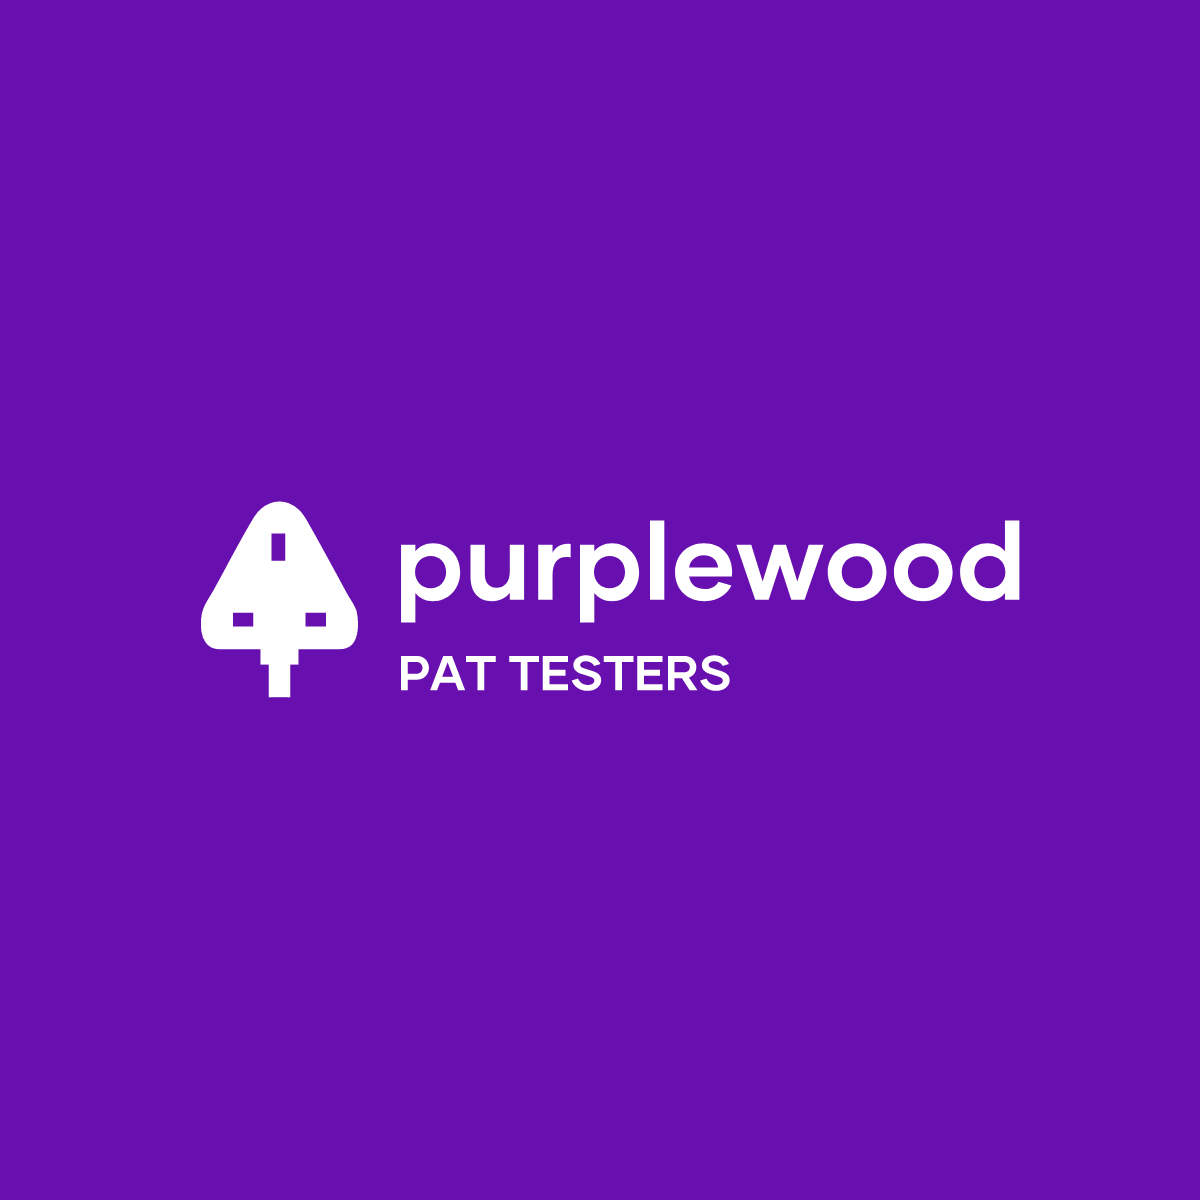 Purplewood PAT Testers